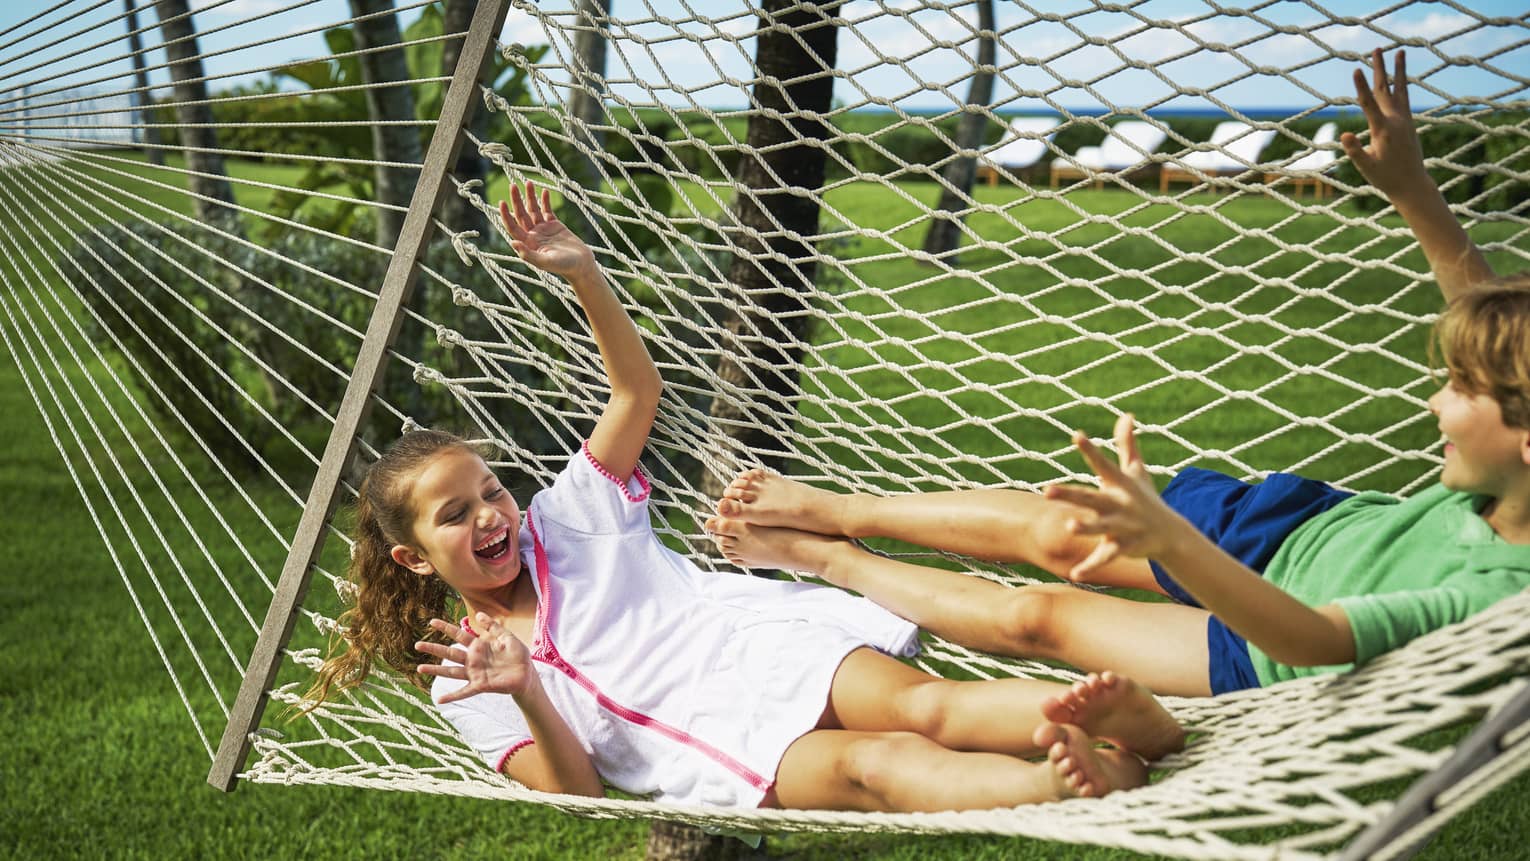 Two children swinging on a hammock outside.